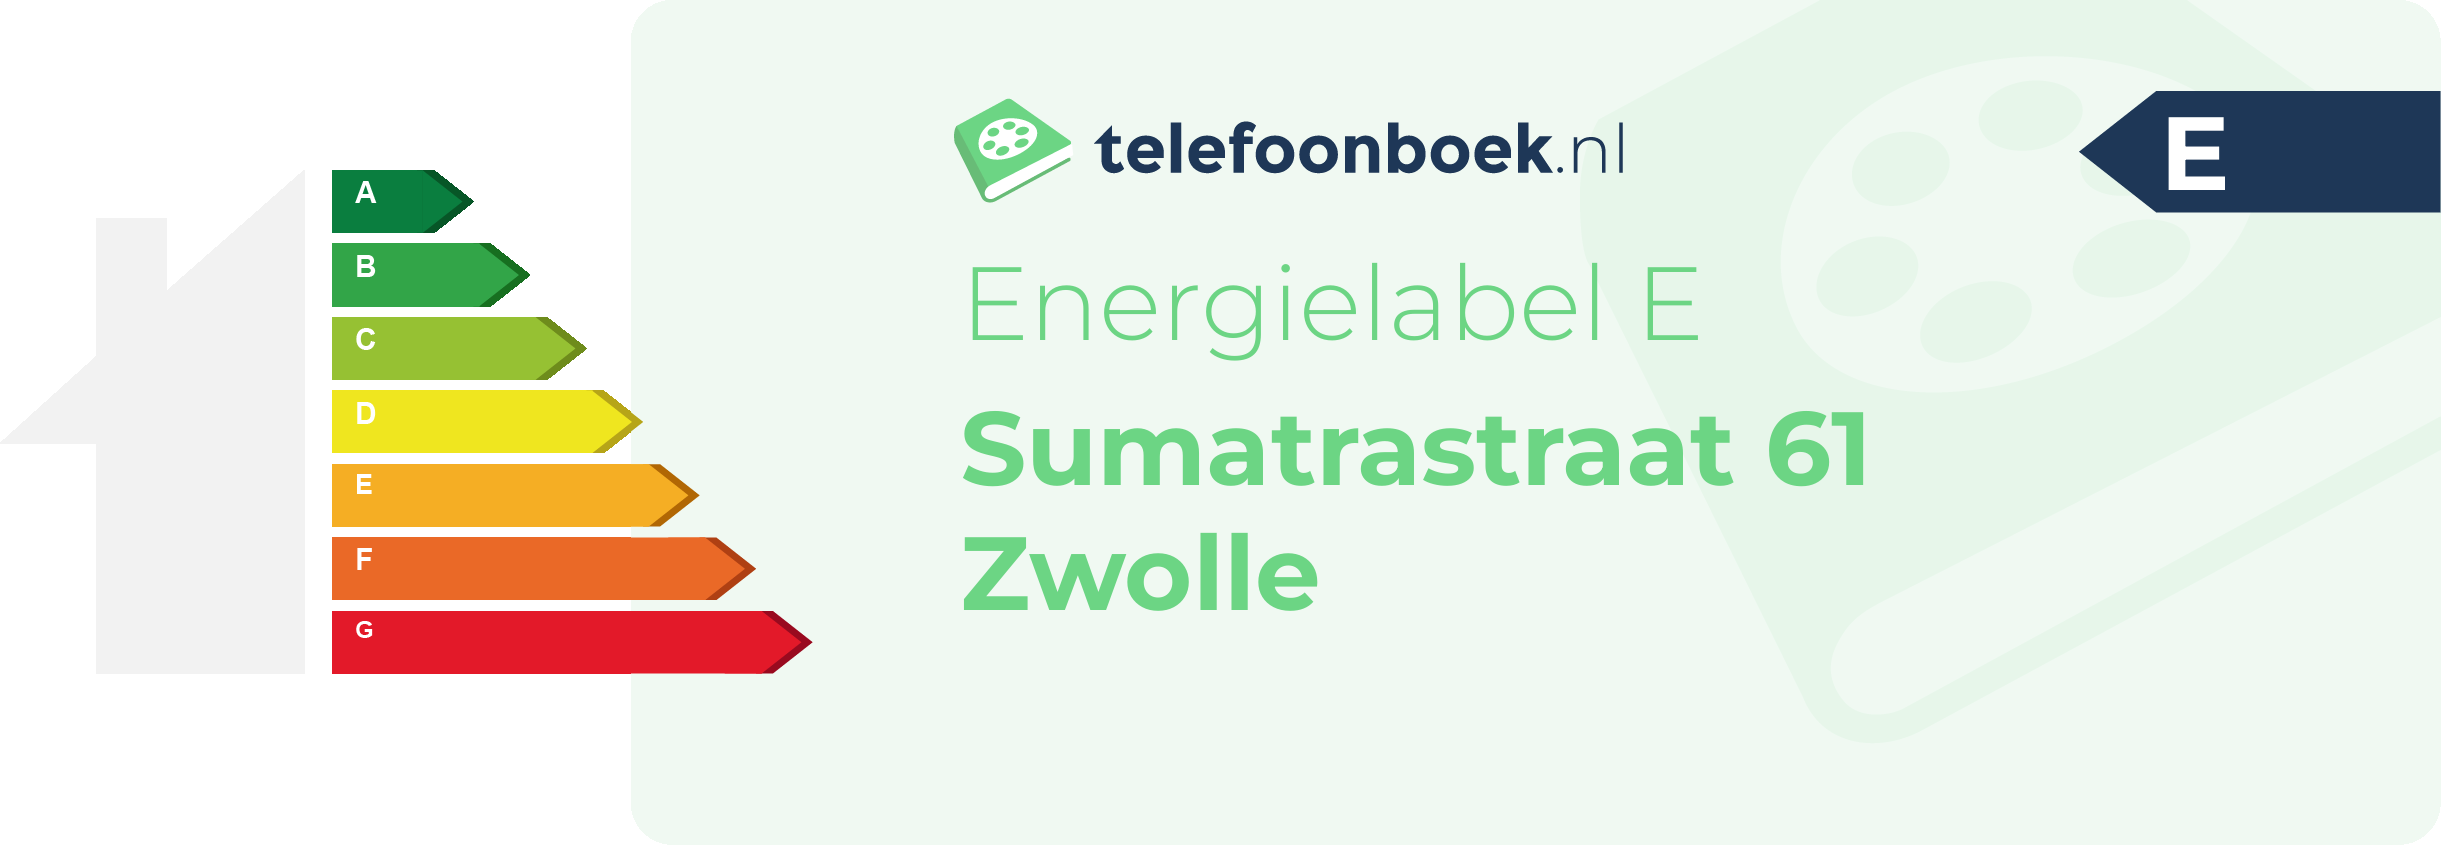 Energielabel Sumatrastraat 61 Zwolle